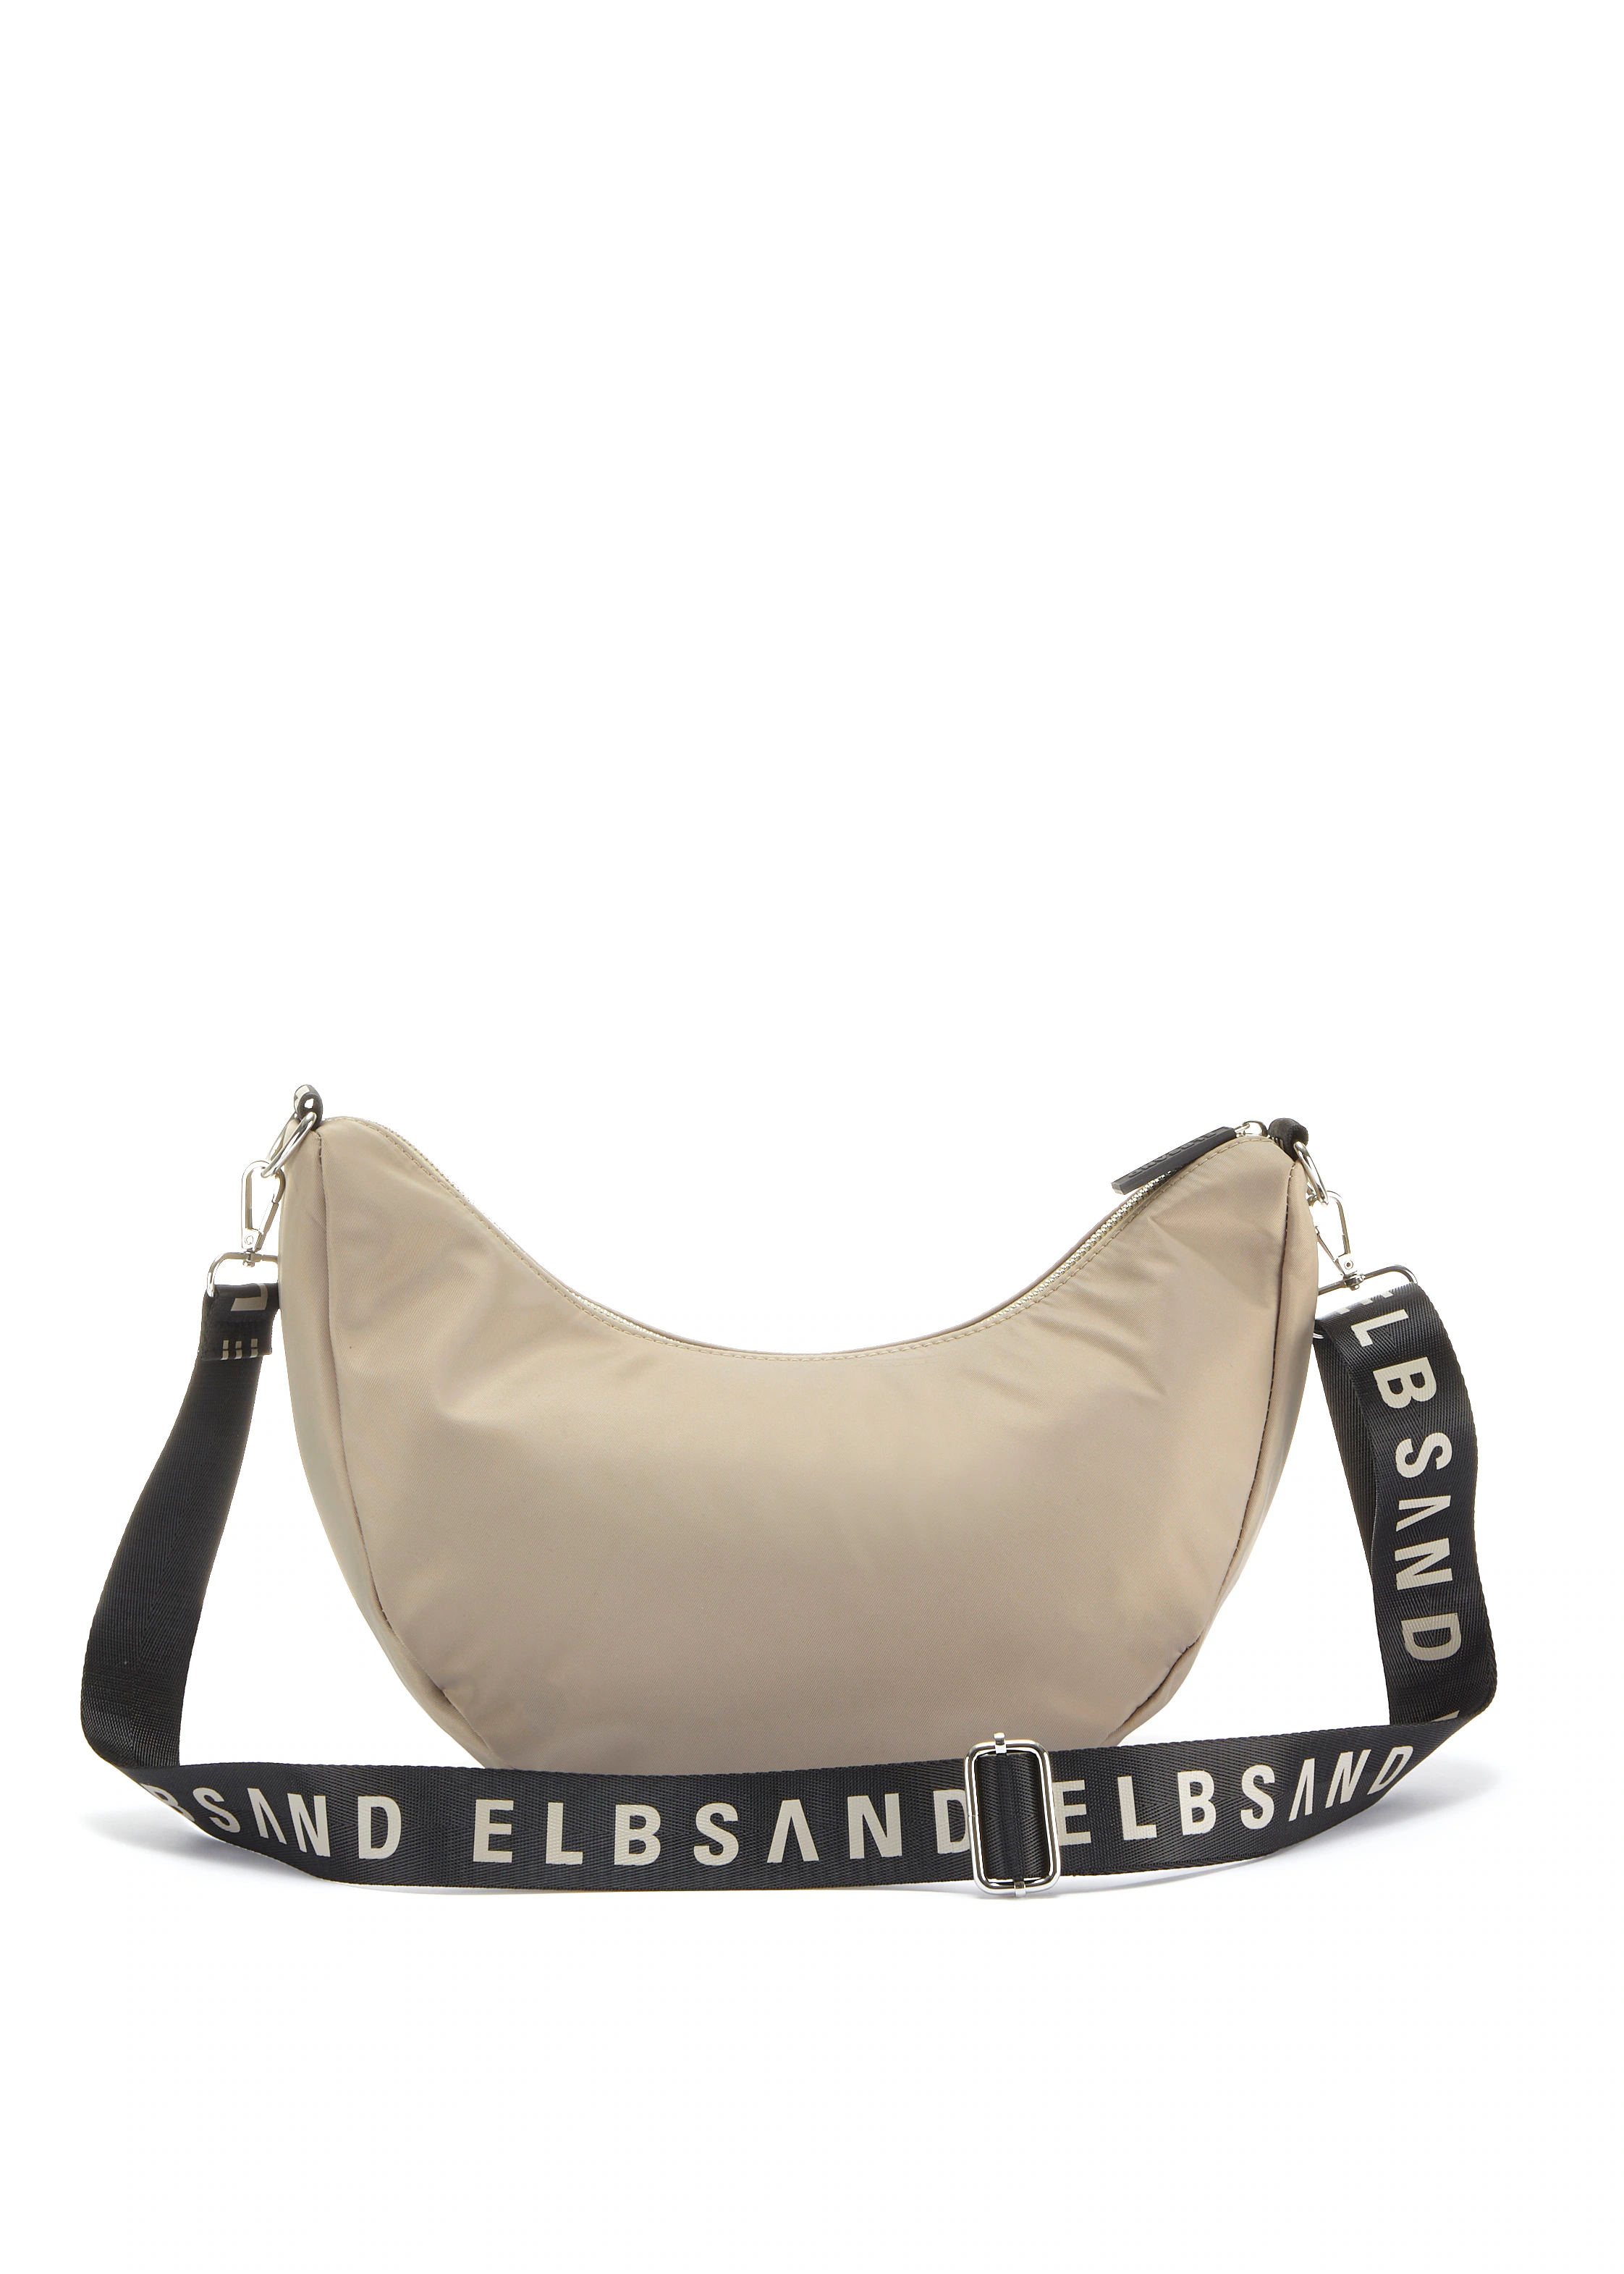 Elbsand Handtasche, Hobo-Tasche, Schultertasche, Minibag, Henkeltasche VEGA günstig online kaufen